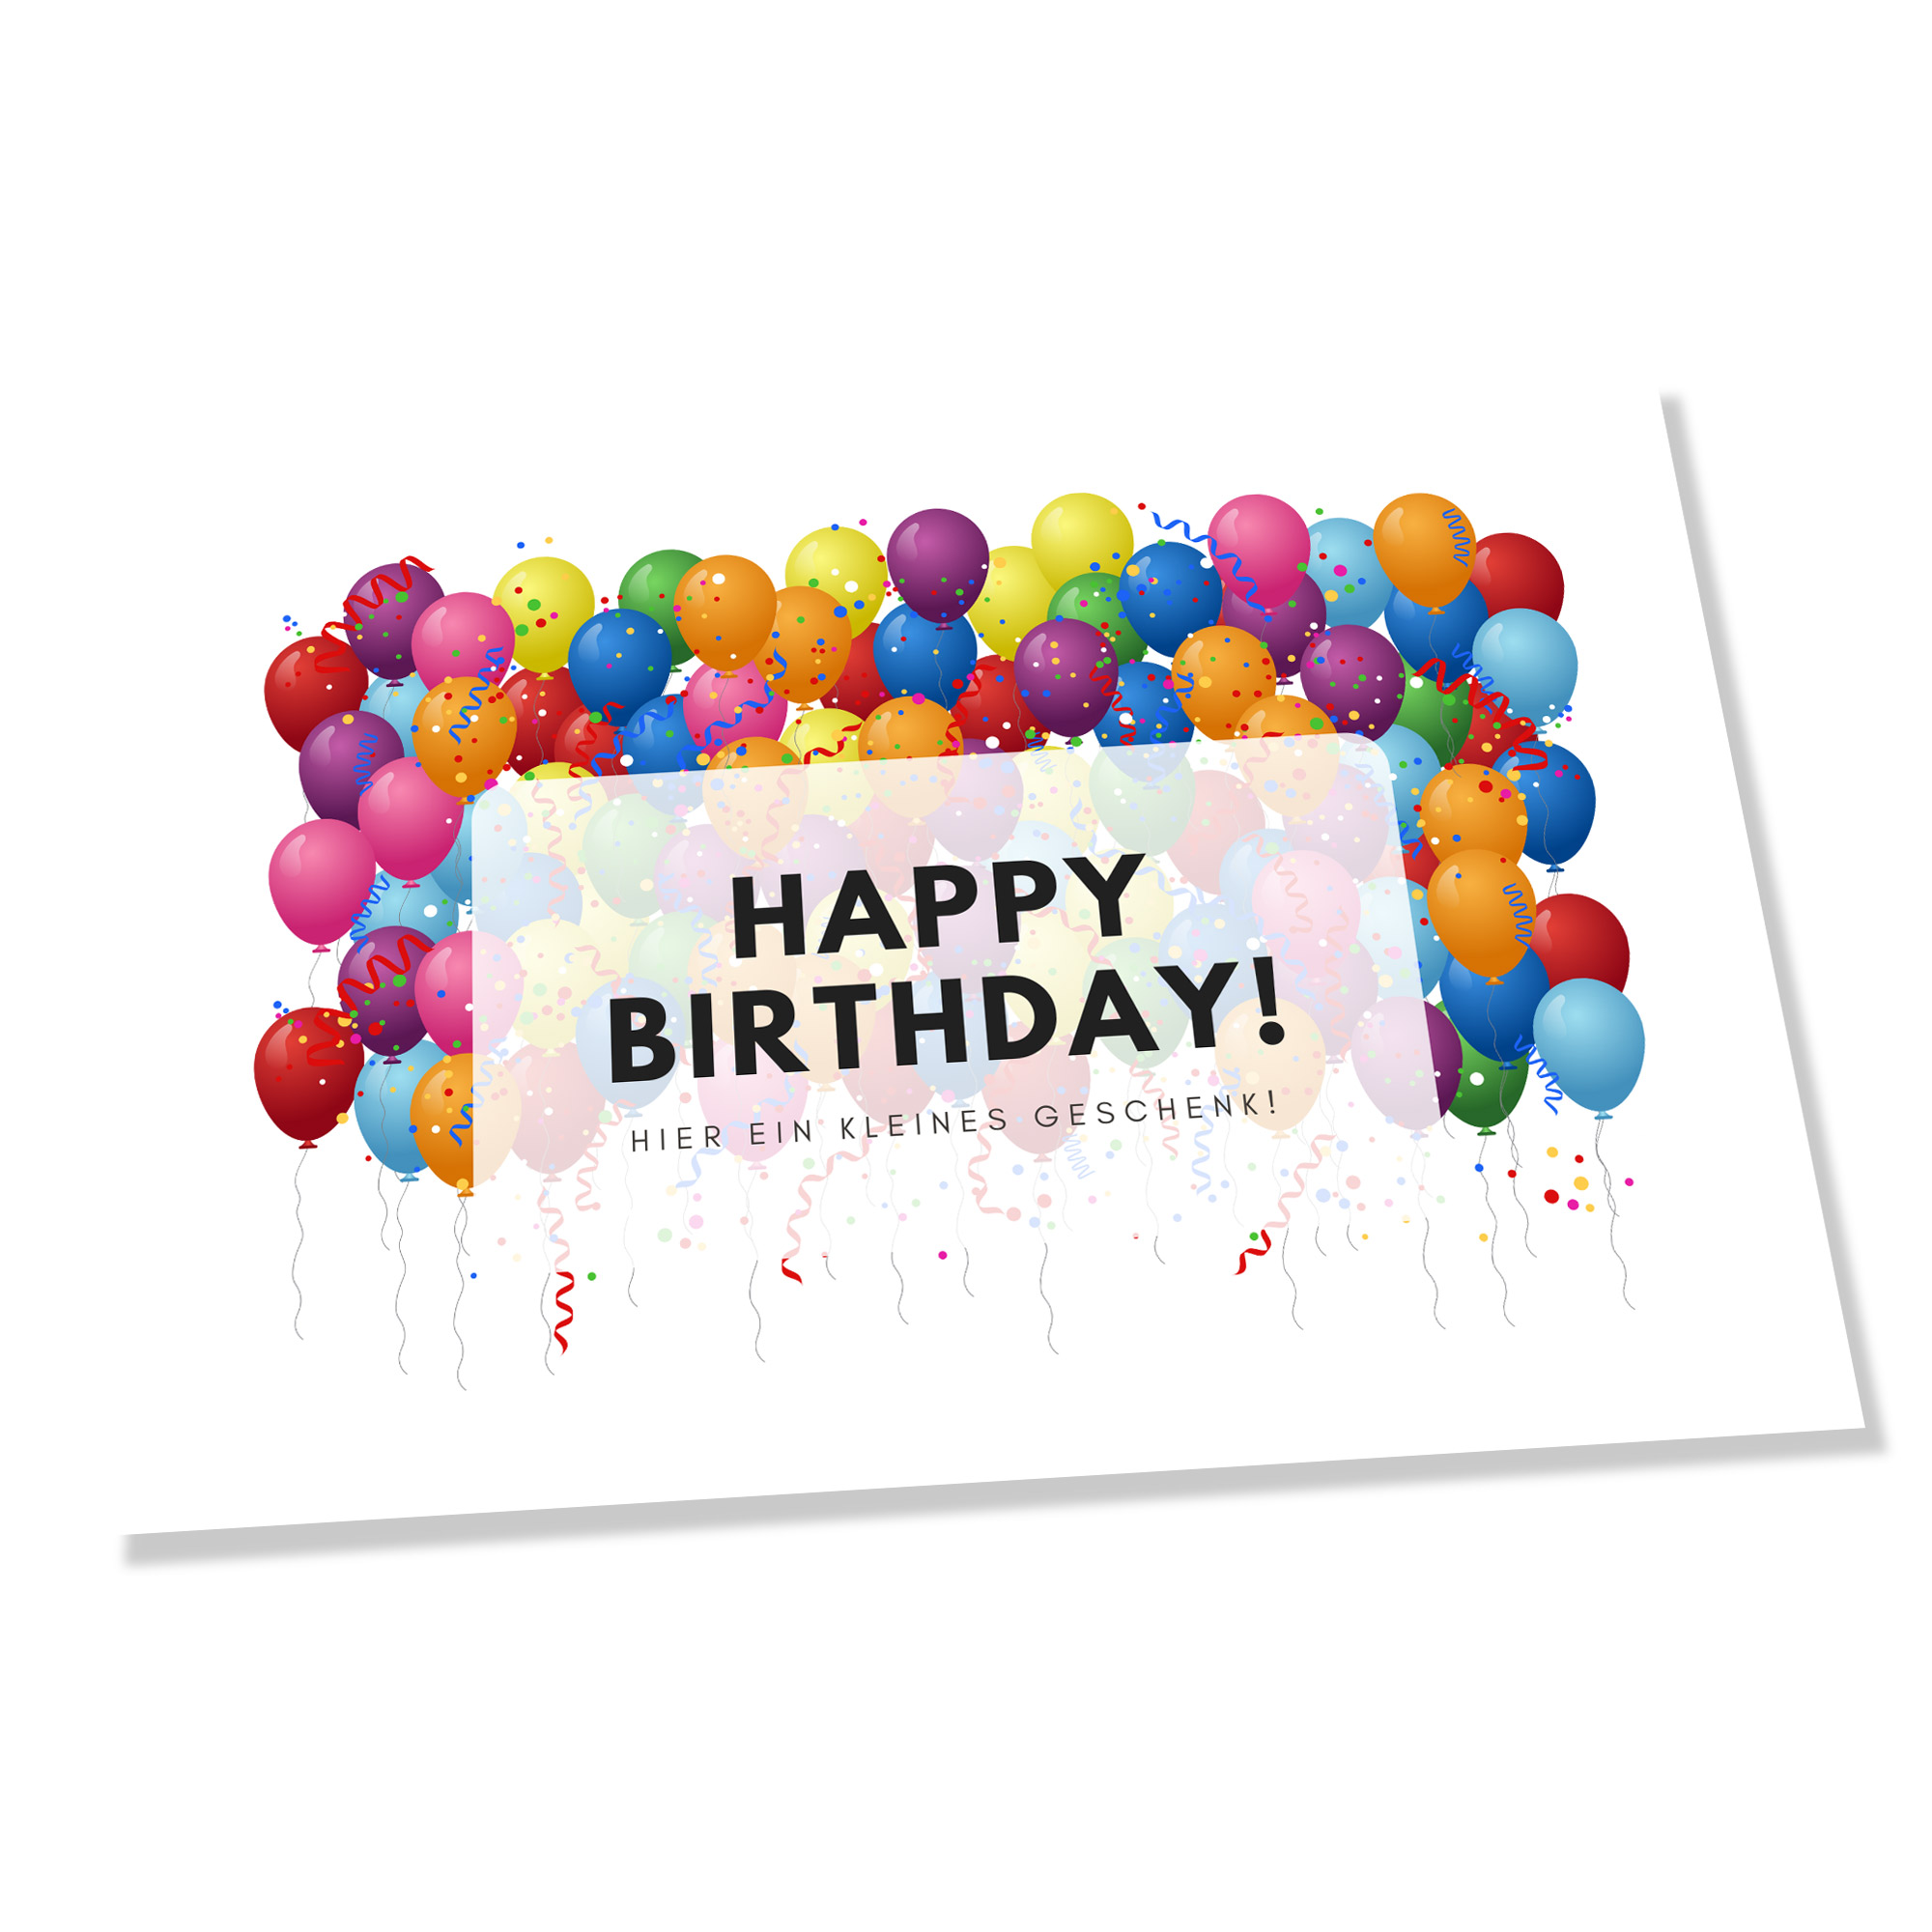 Gratisgrußkarte zum Geburtstag mit bunten Luftballons Motiven